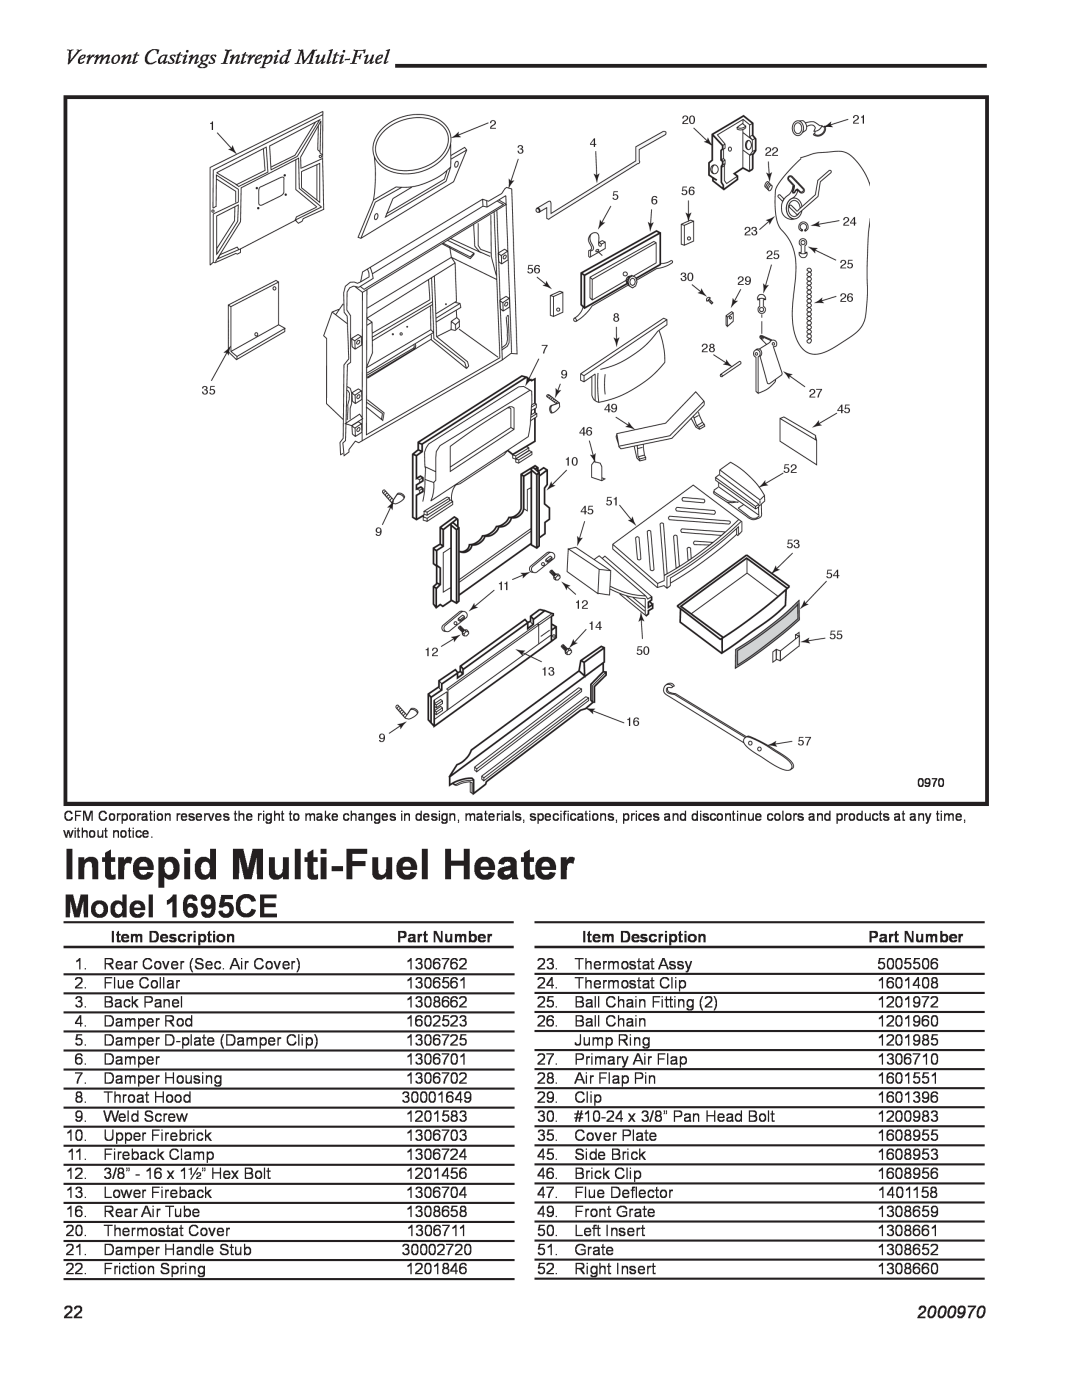 Vermont Casting Intrepid Multi-FuelHeater, Model 1695CE, Vermont Castings Intrepid Multi-Fuel, 2000970, Part Number 